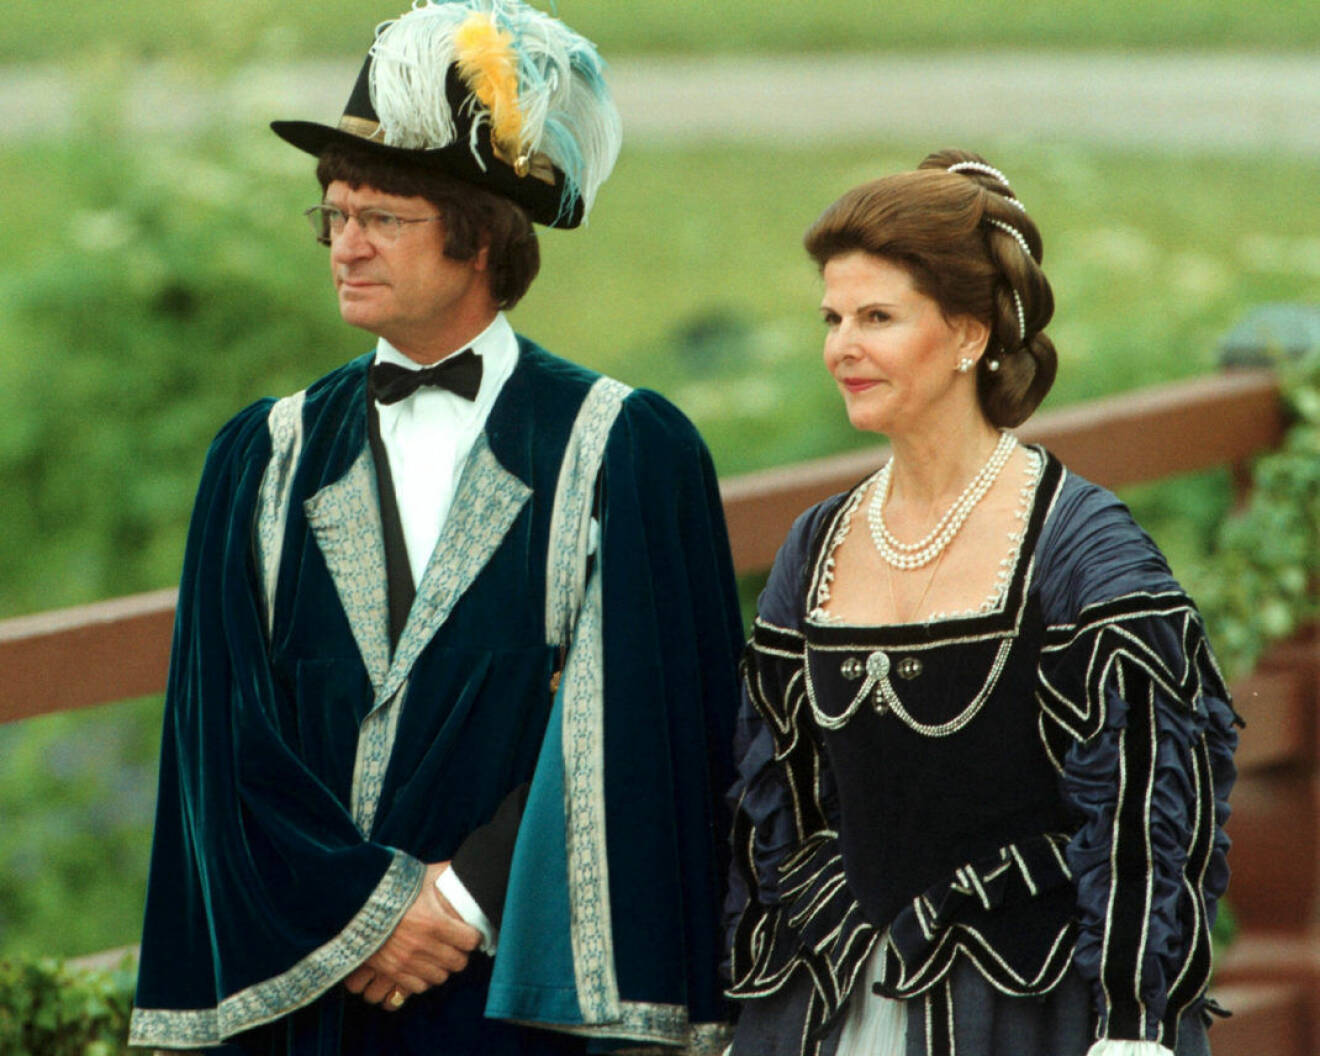 Kung Carl XVI Gustaf och drottning Silvia firar silverbröllop i svulstiga kostymer.